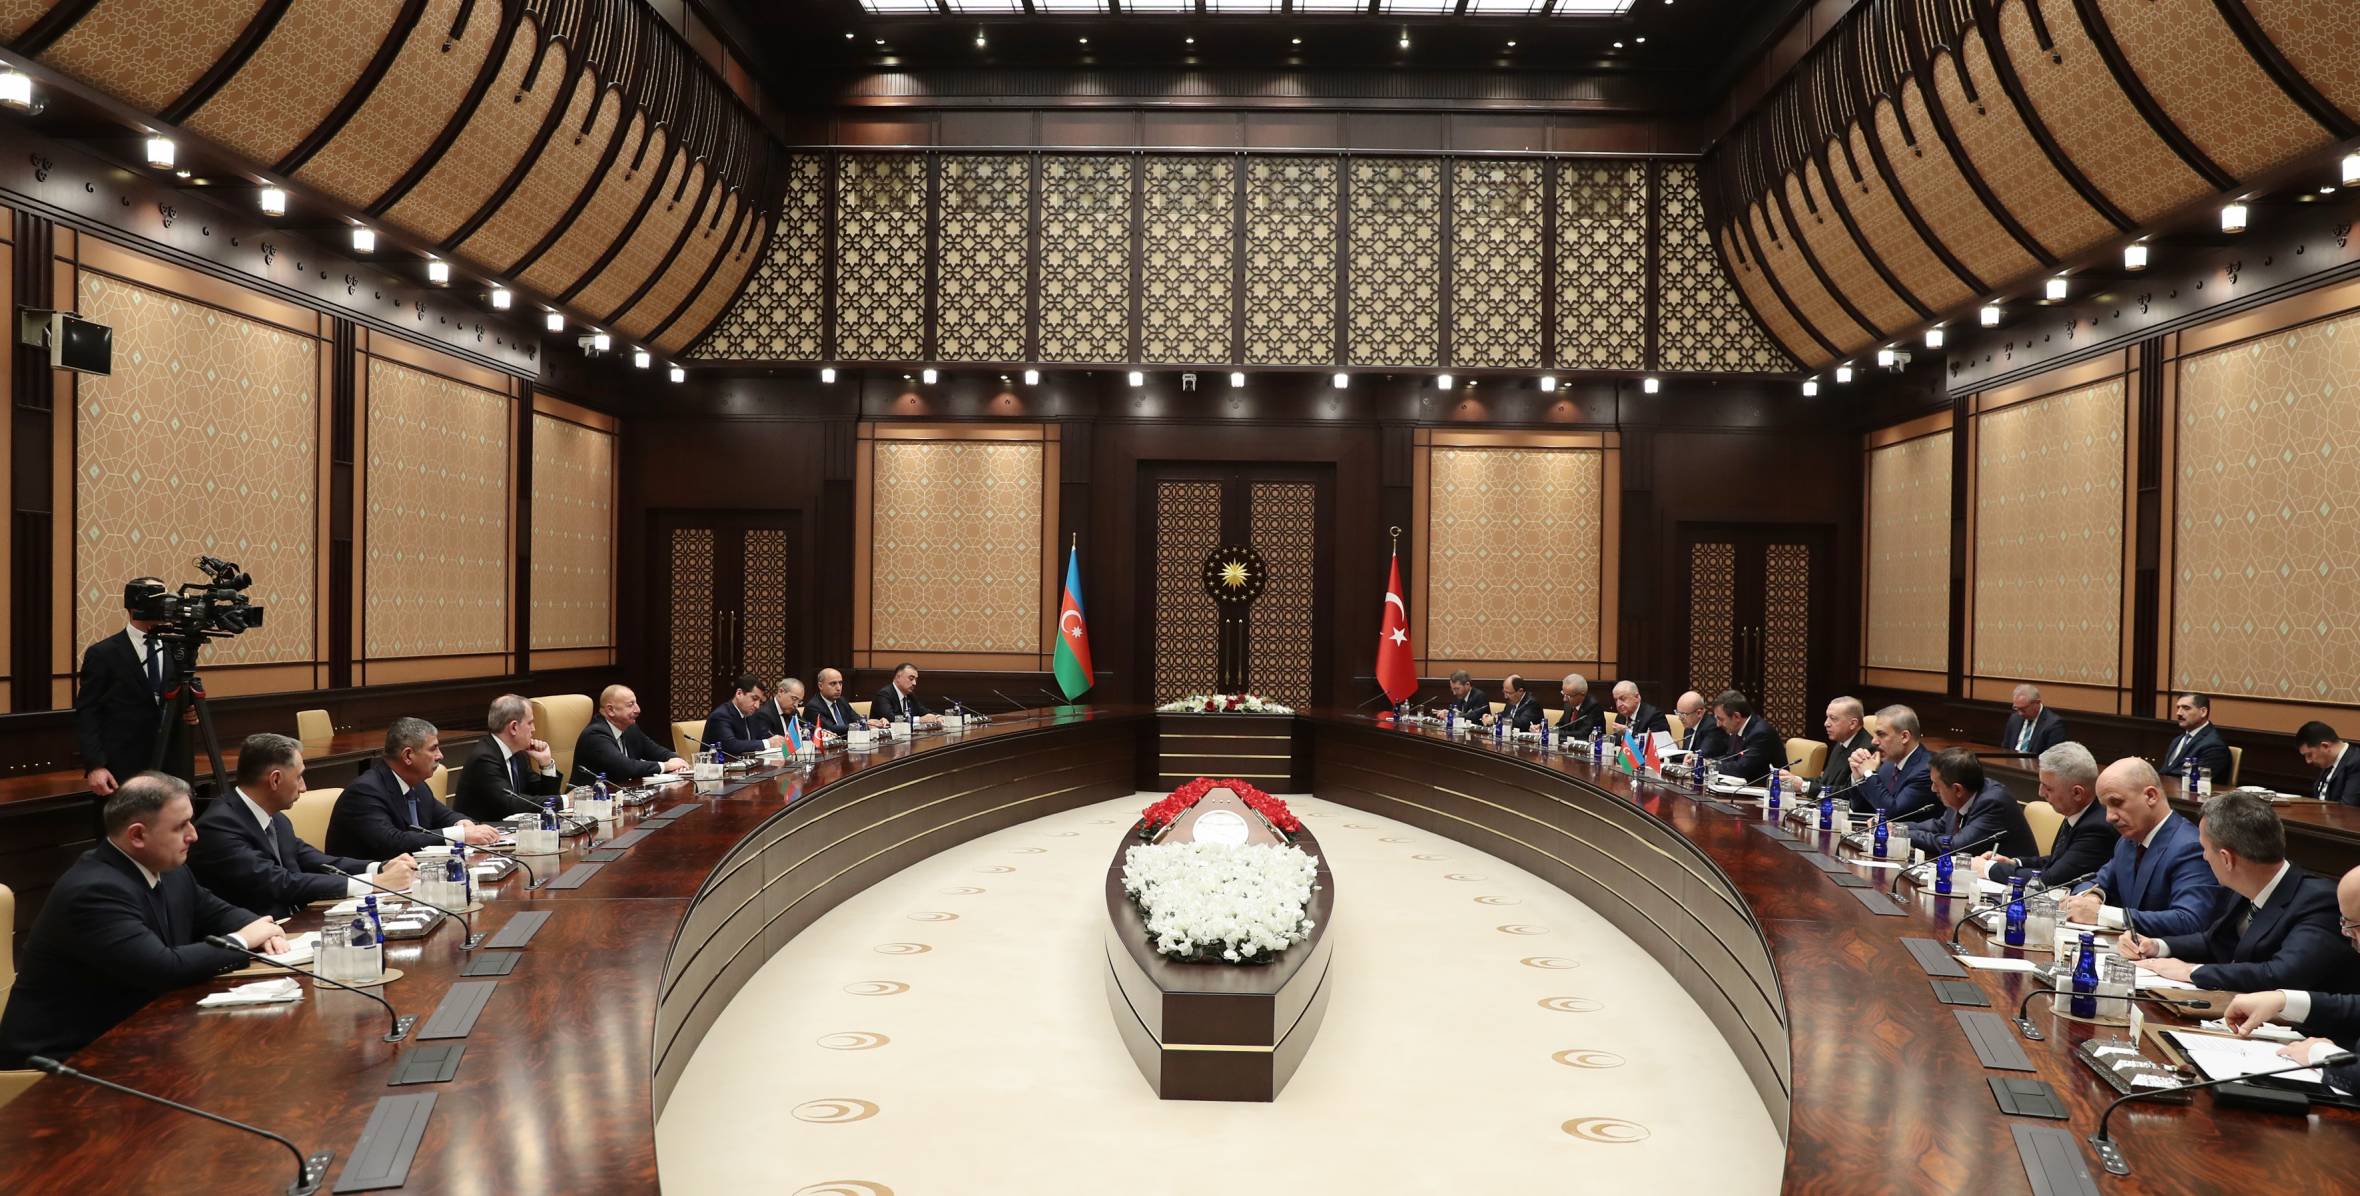 Состоялась встреча Ильхама Алиева и Президента Турции Реджепа Тайипа Эрдогана в расширенном составе